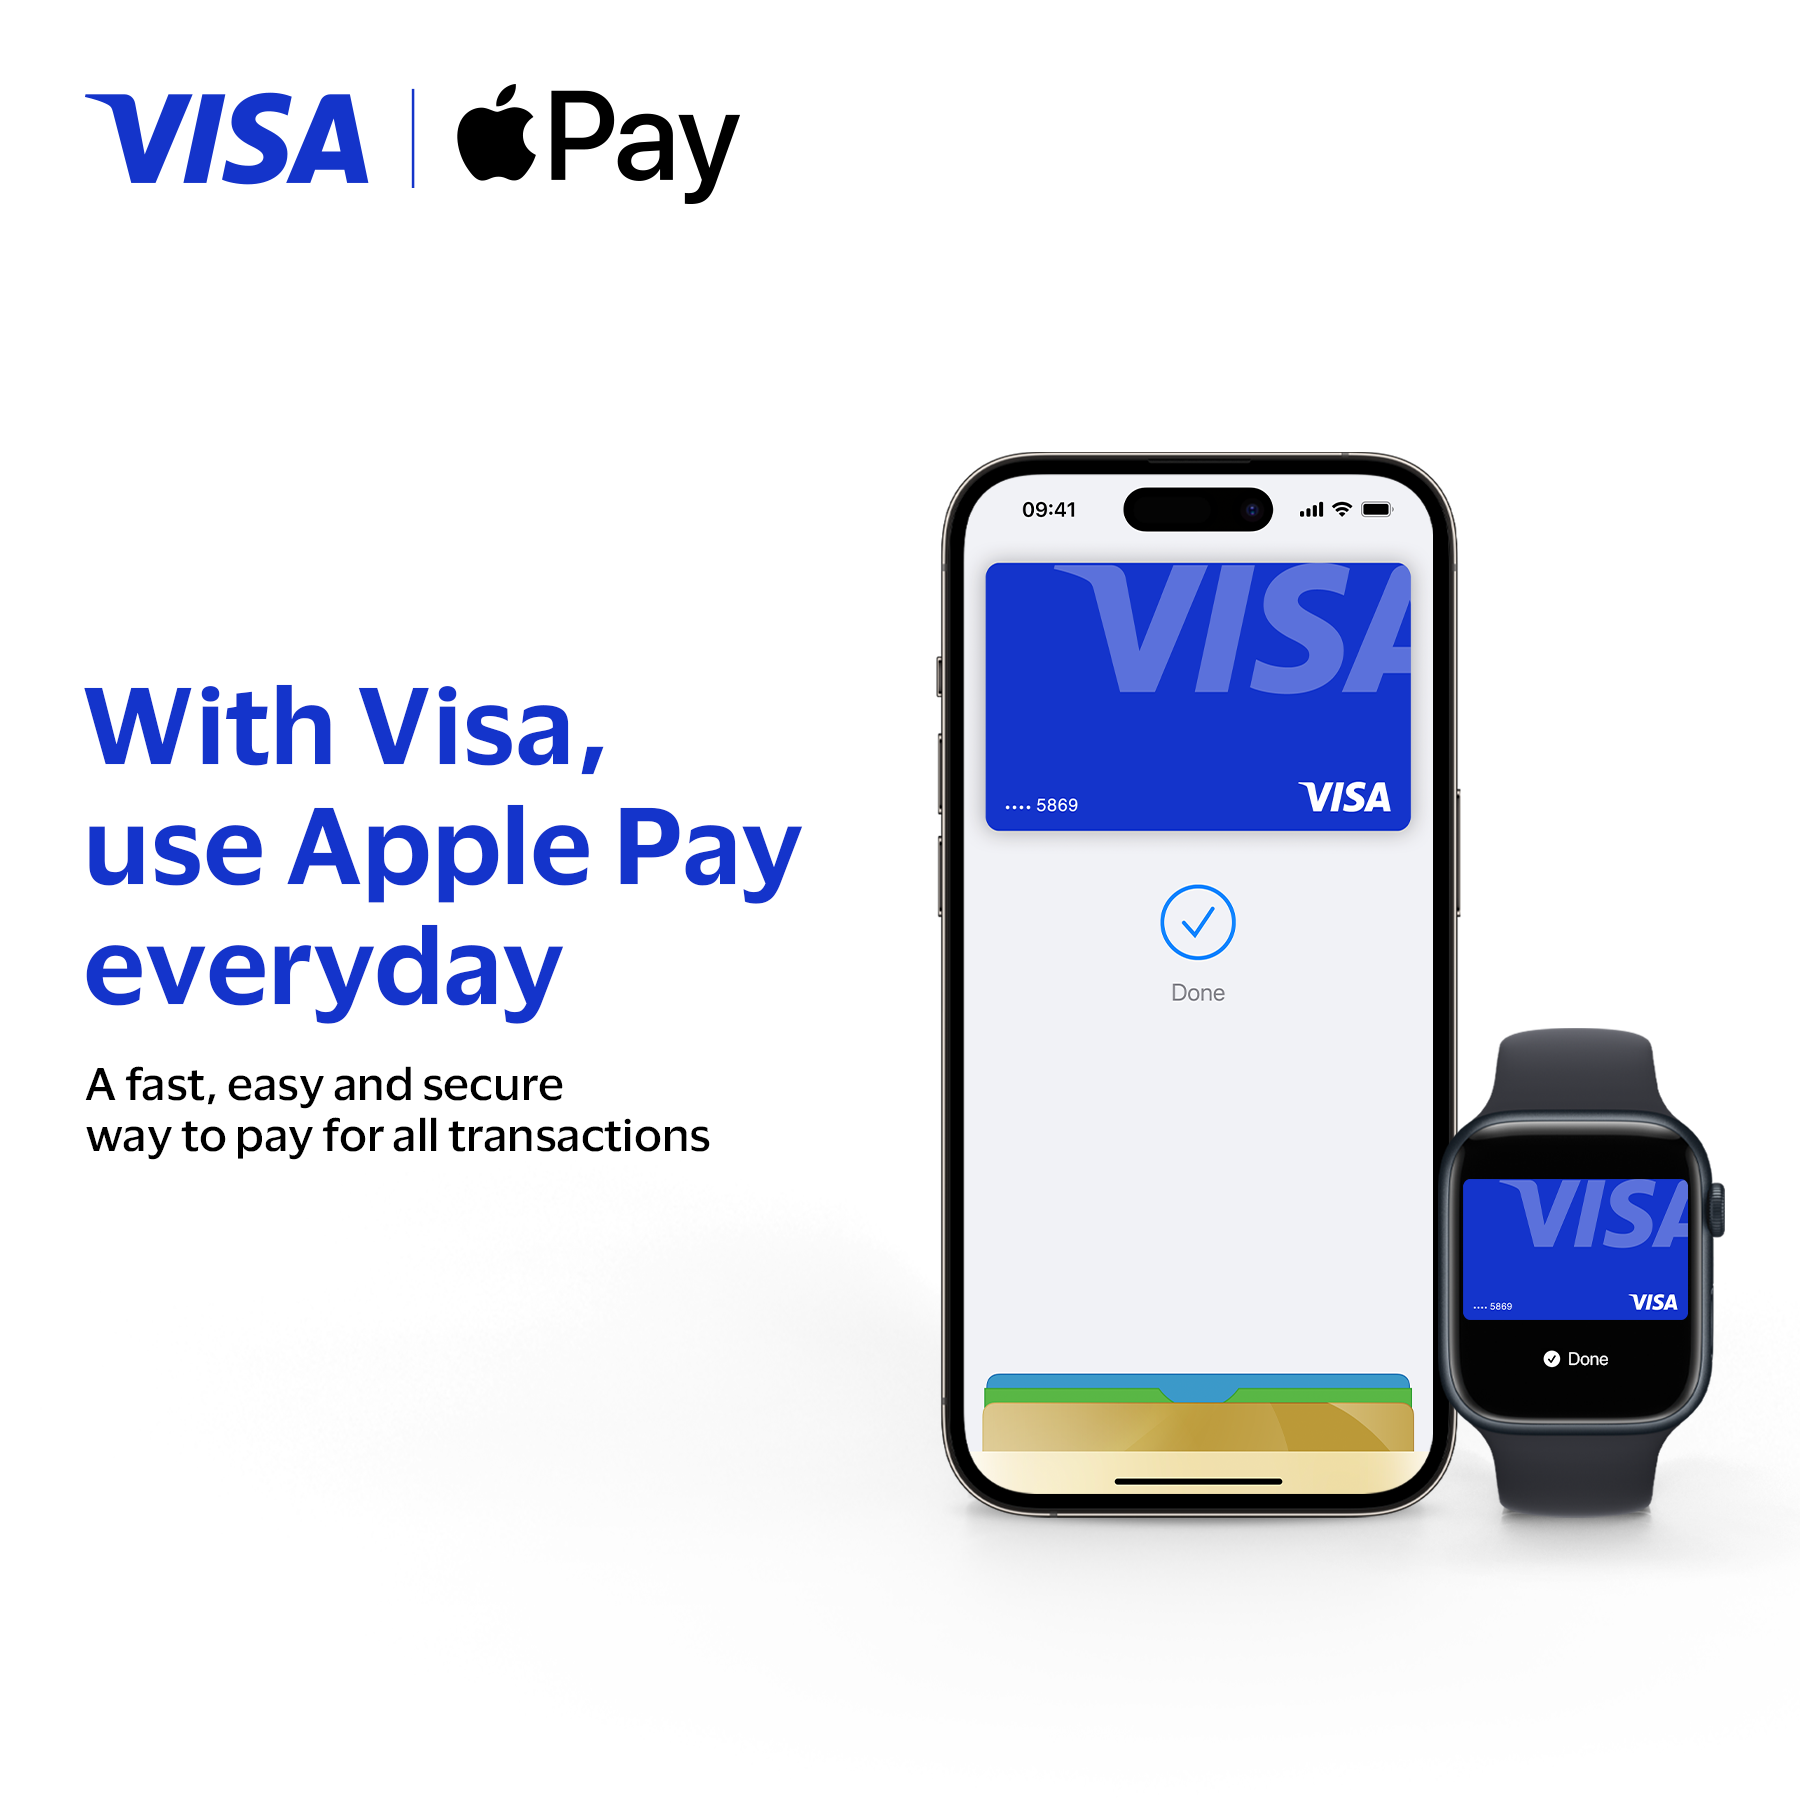 Visa brings Apple Pay to Vietnamese cardholders